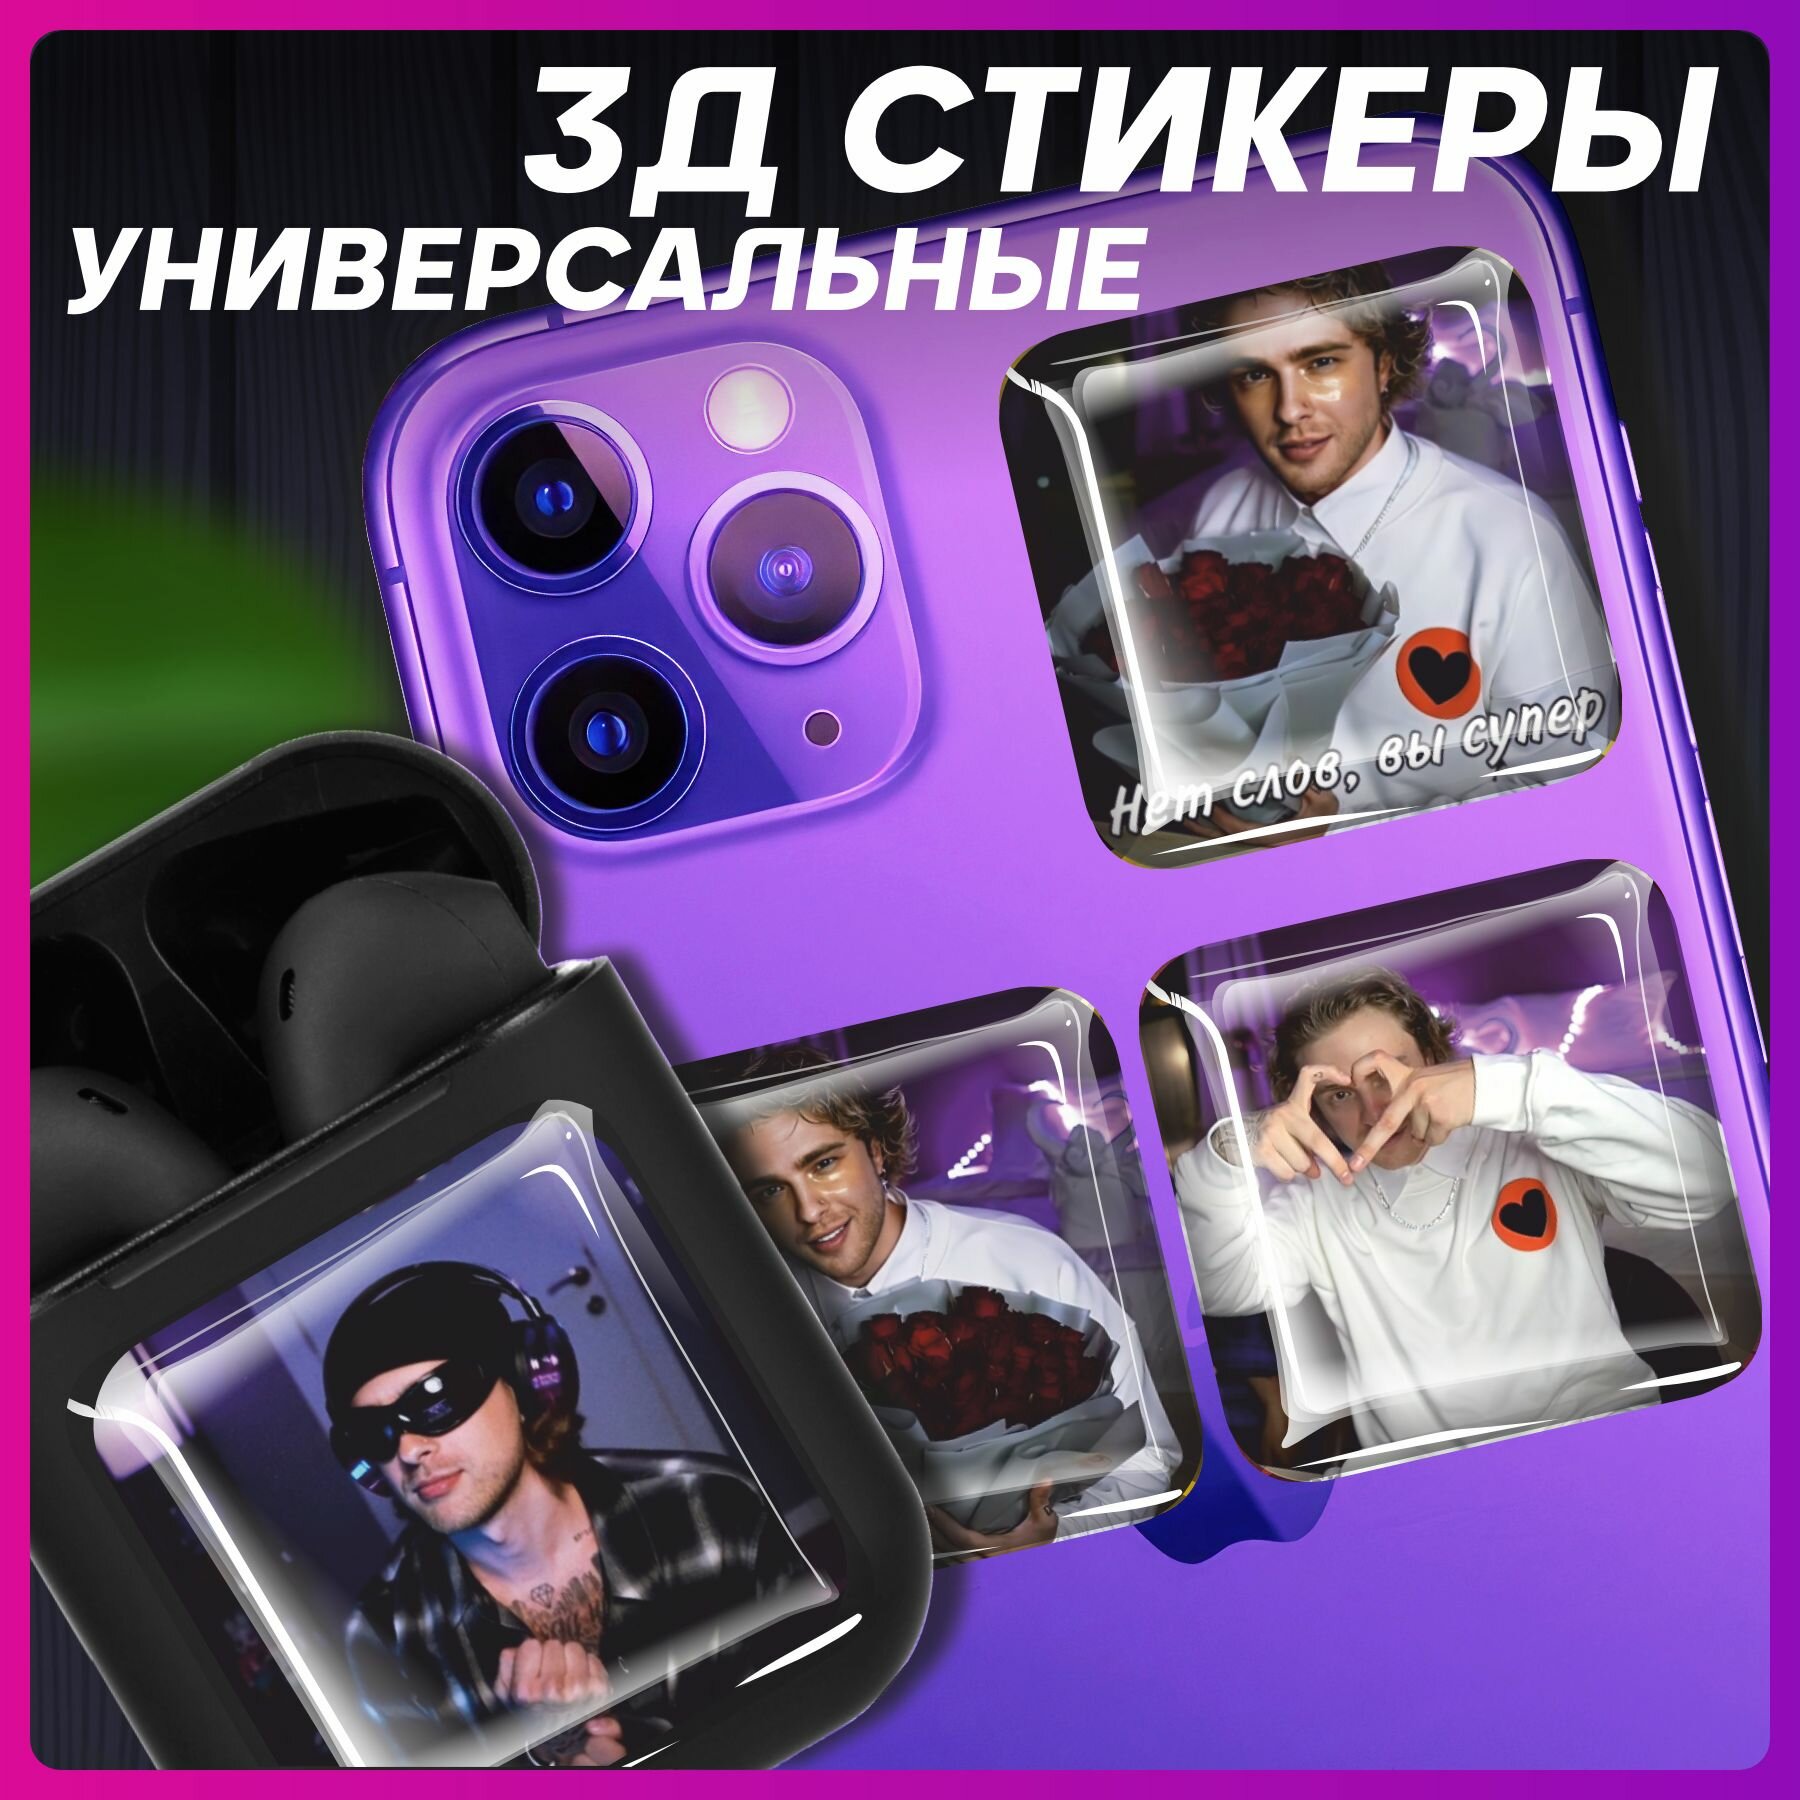 3д стикеры объемные наклейки на телефон 8 марта Егор Крид